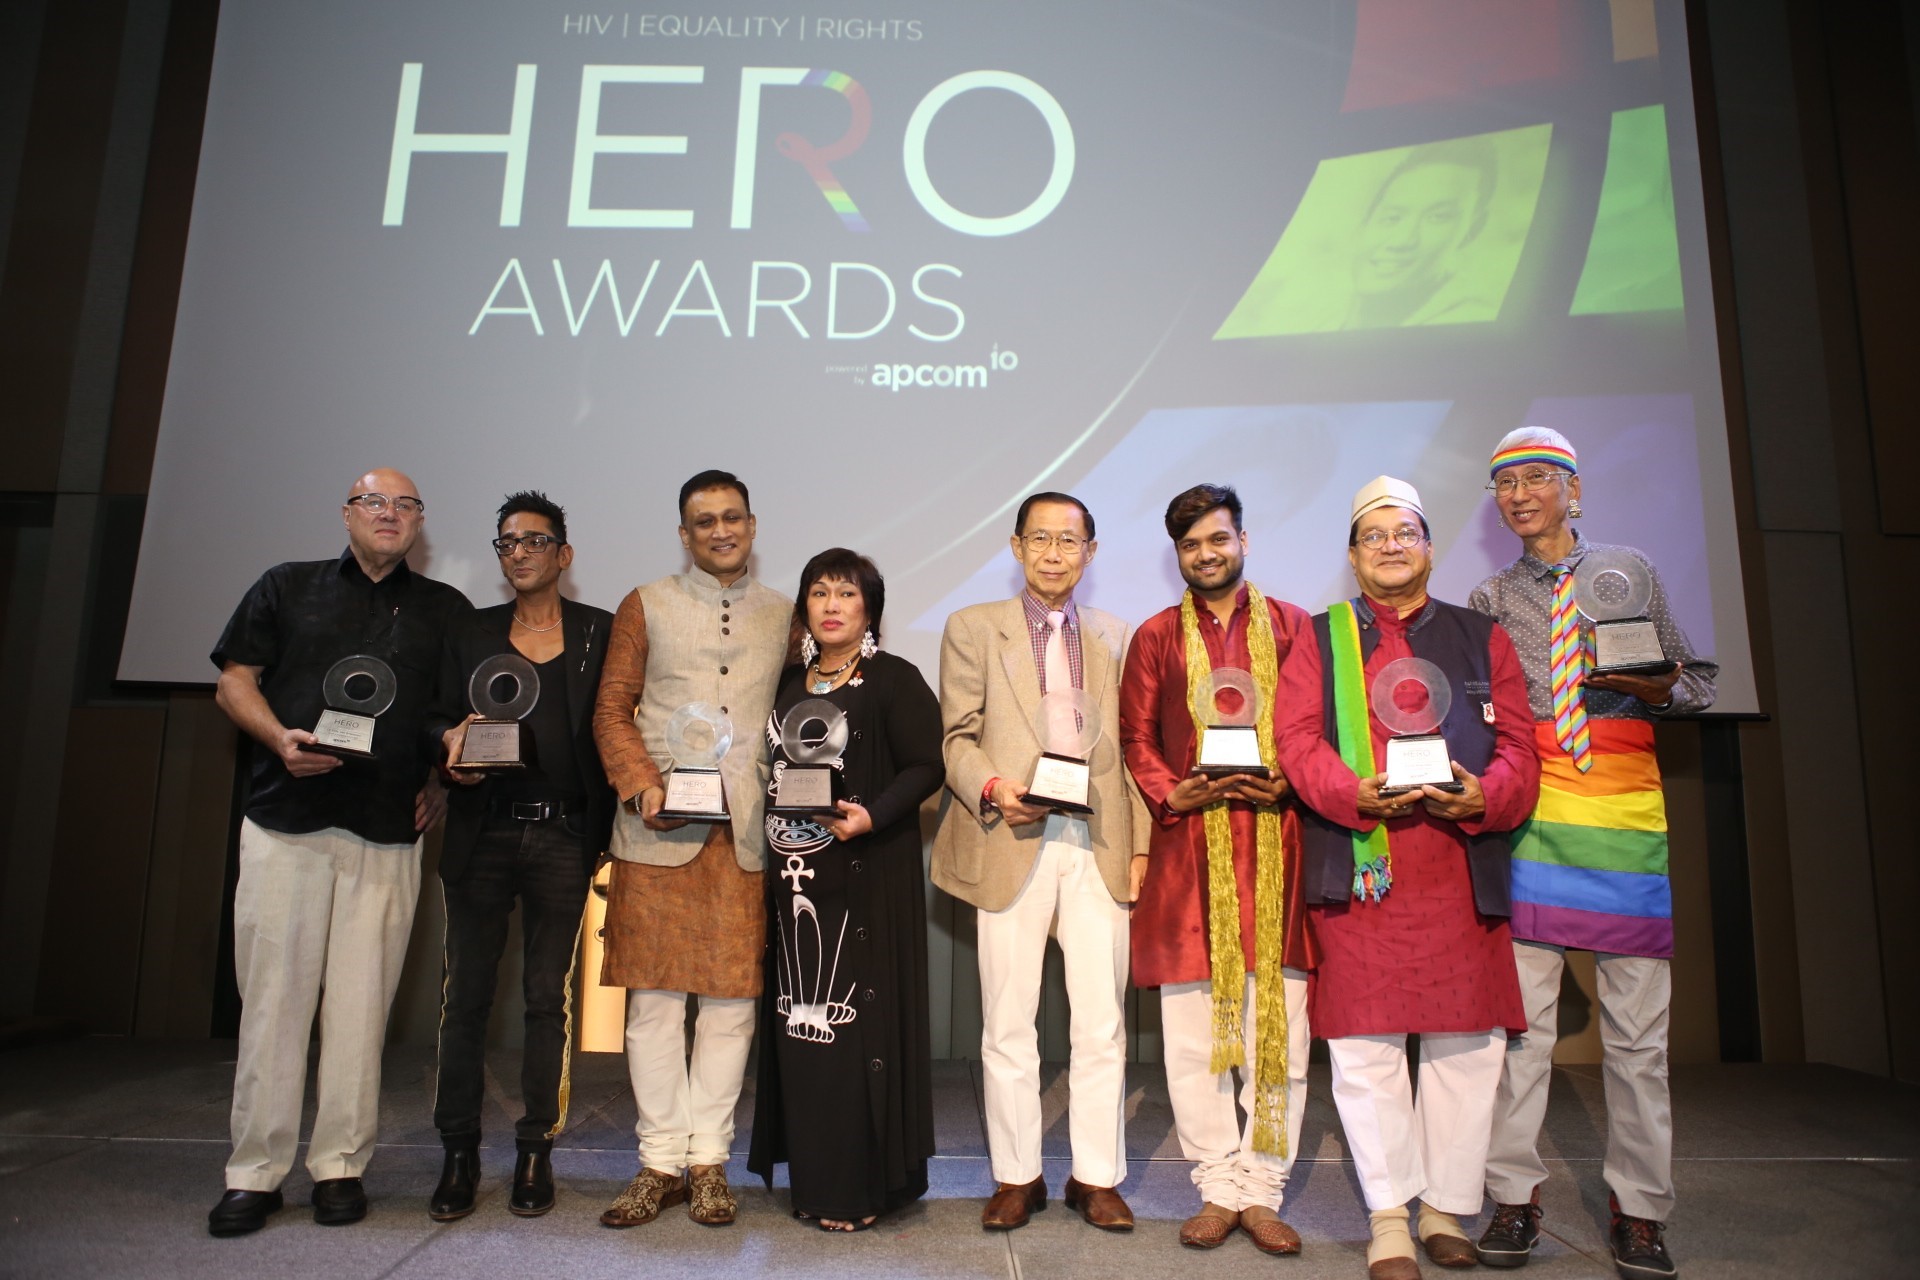 ฮีโร่ผู้ทำงานด้าน HIV และ LGBT ในเอเชียแปซิฟิก เข้ารับรางวัลในงานกาล่า ณ กรุงเทพฯ